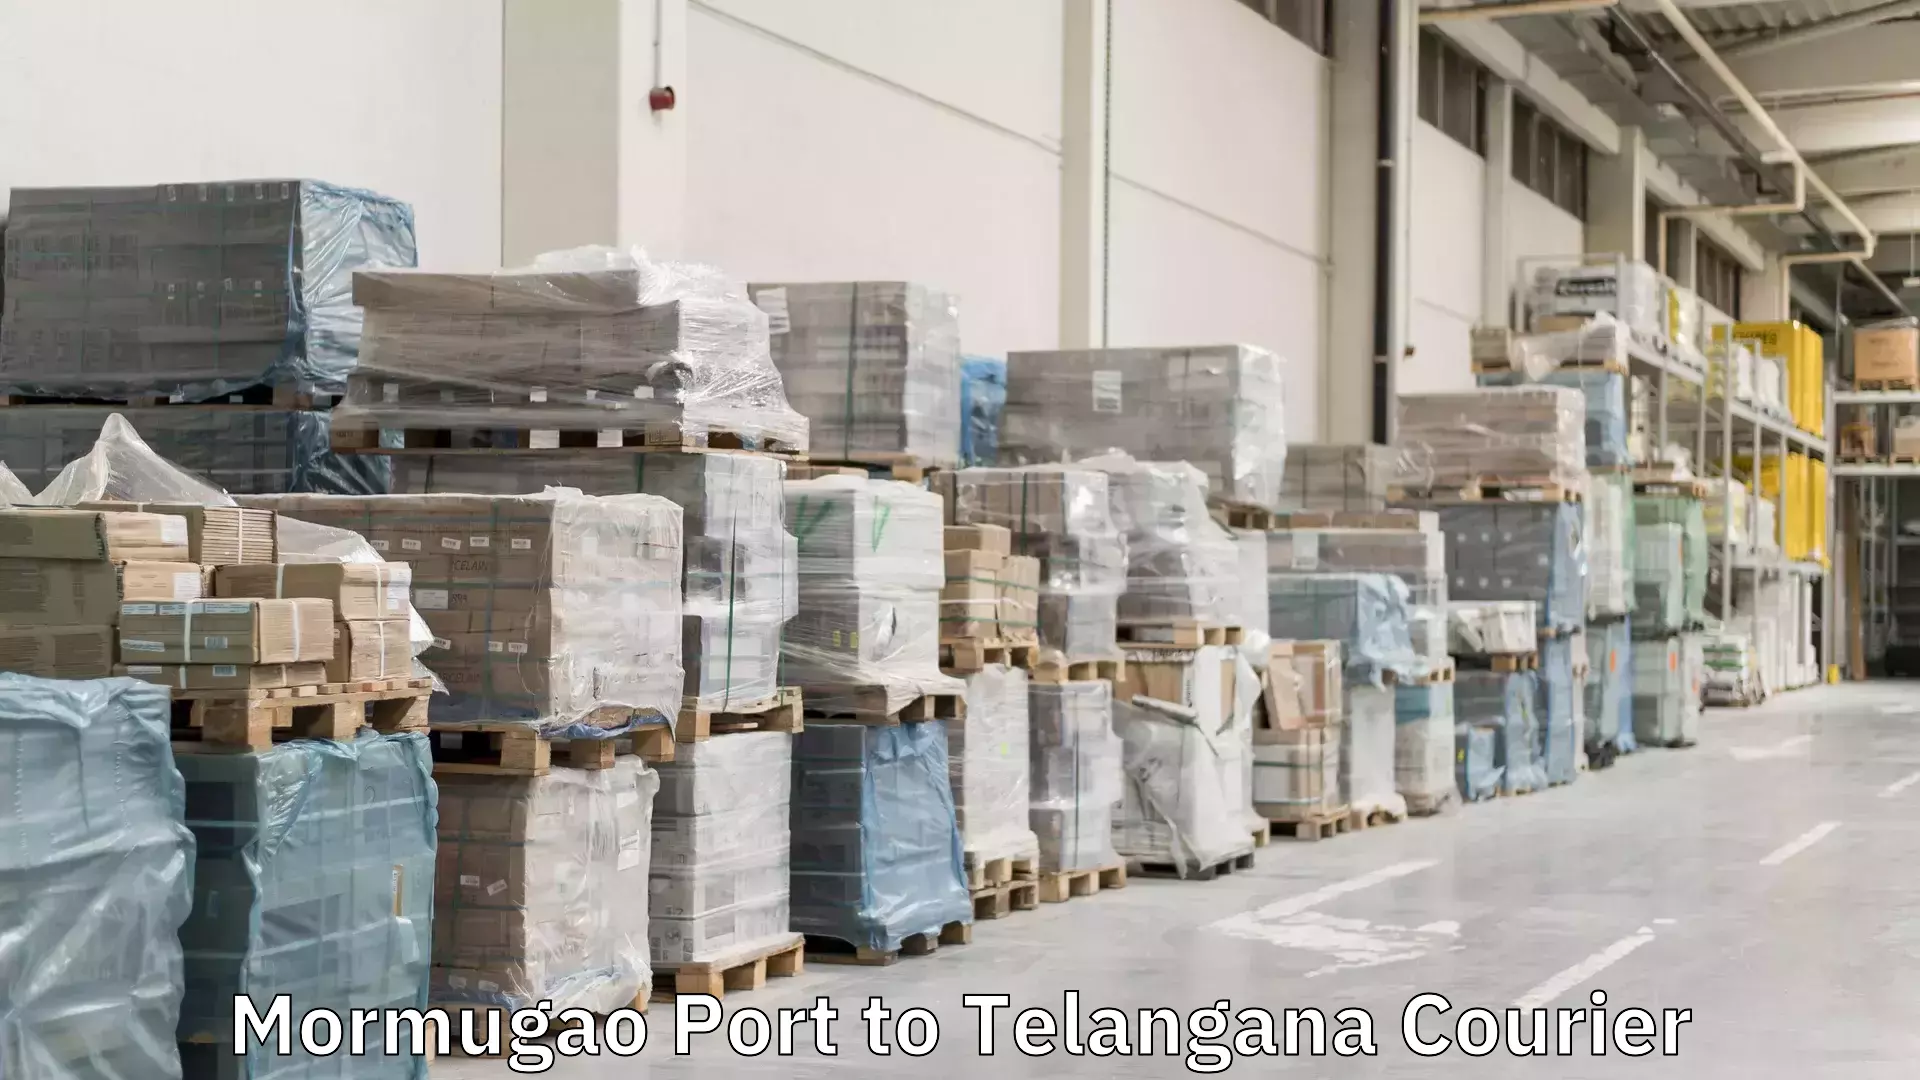 High-priority parcel service Mormugao Port to Telangana